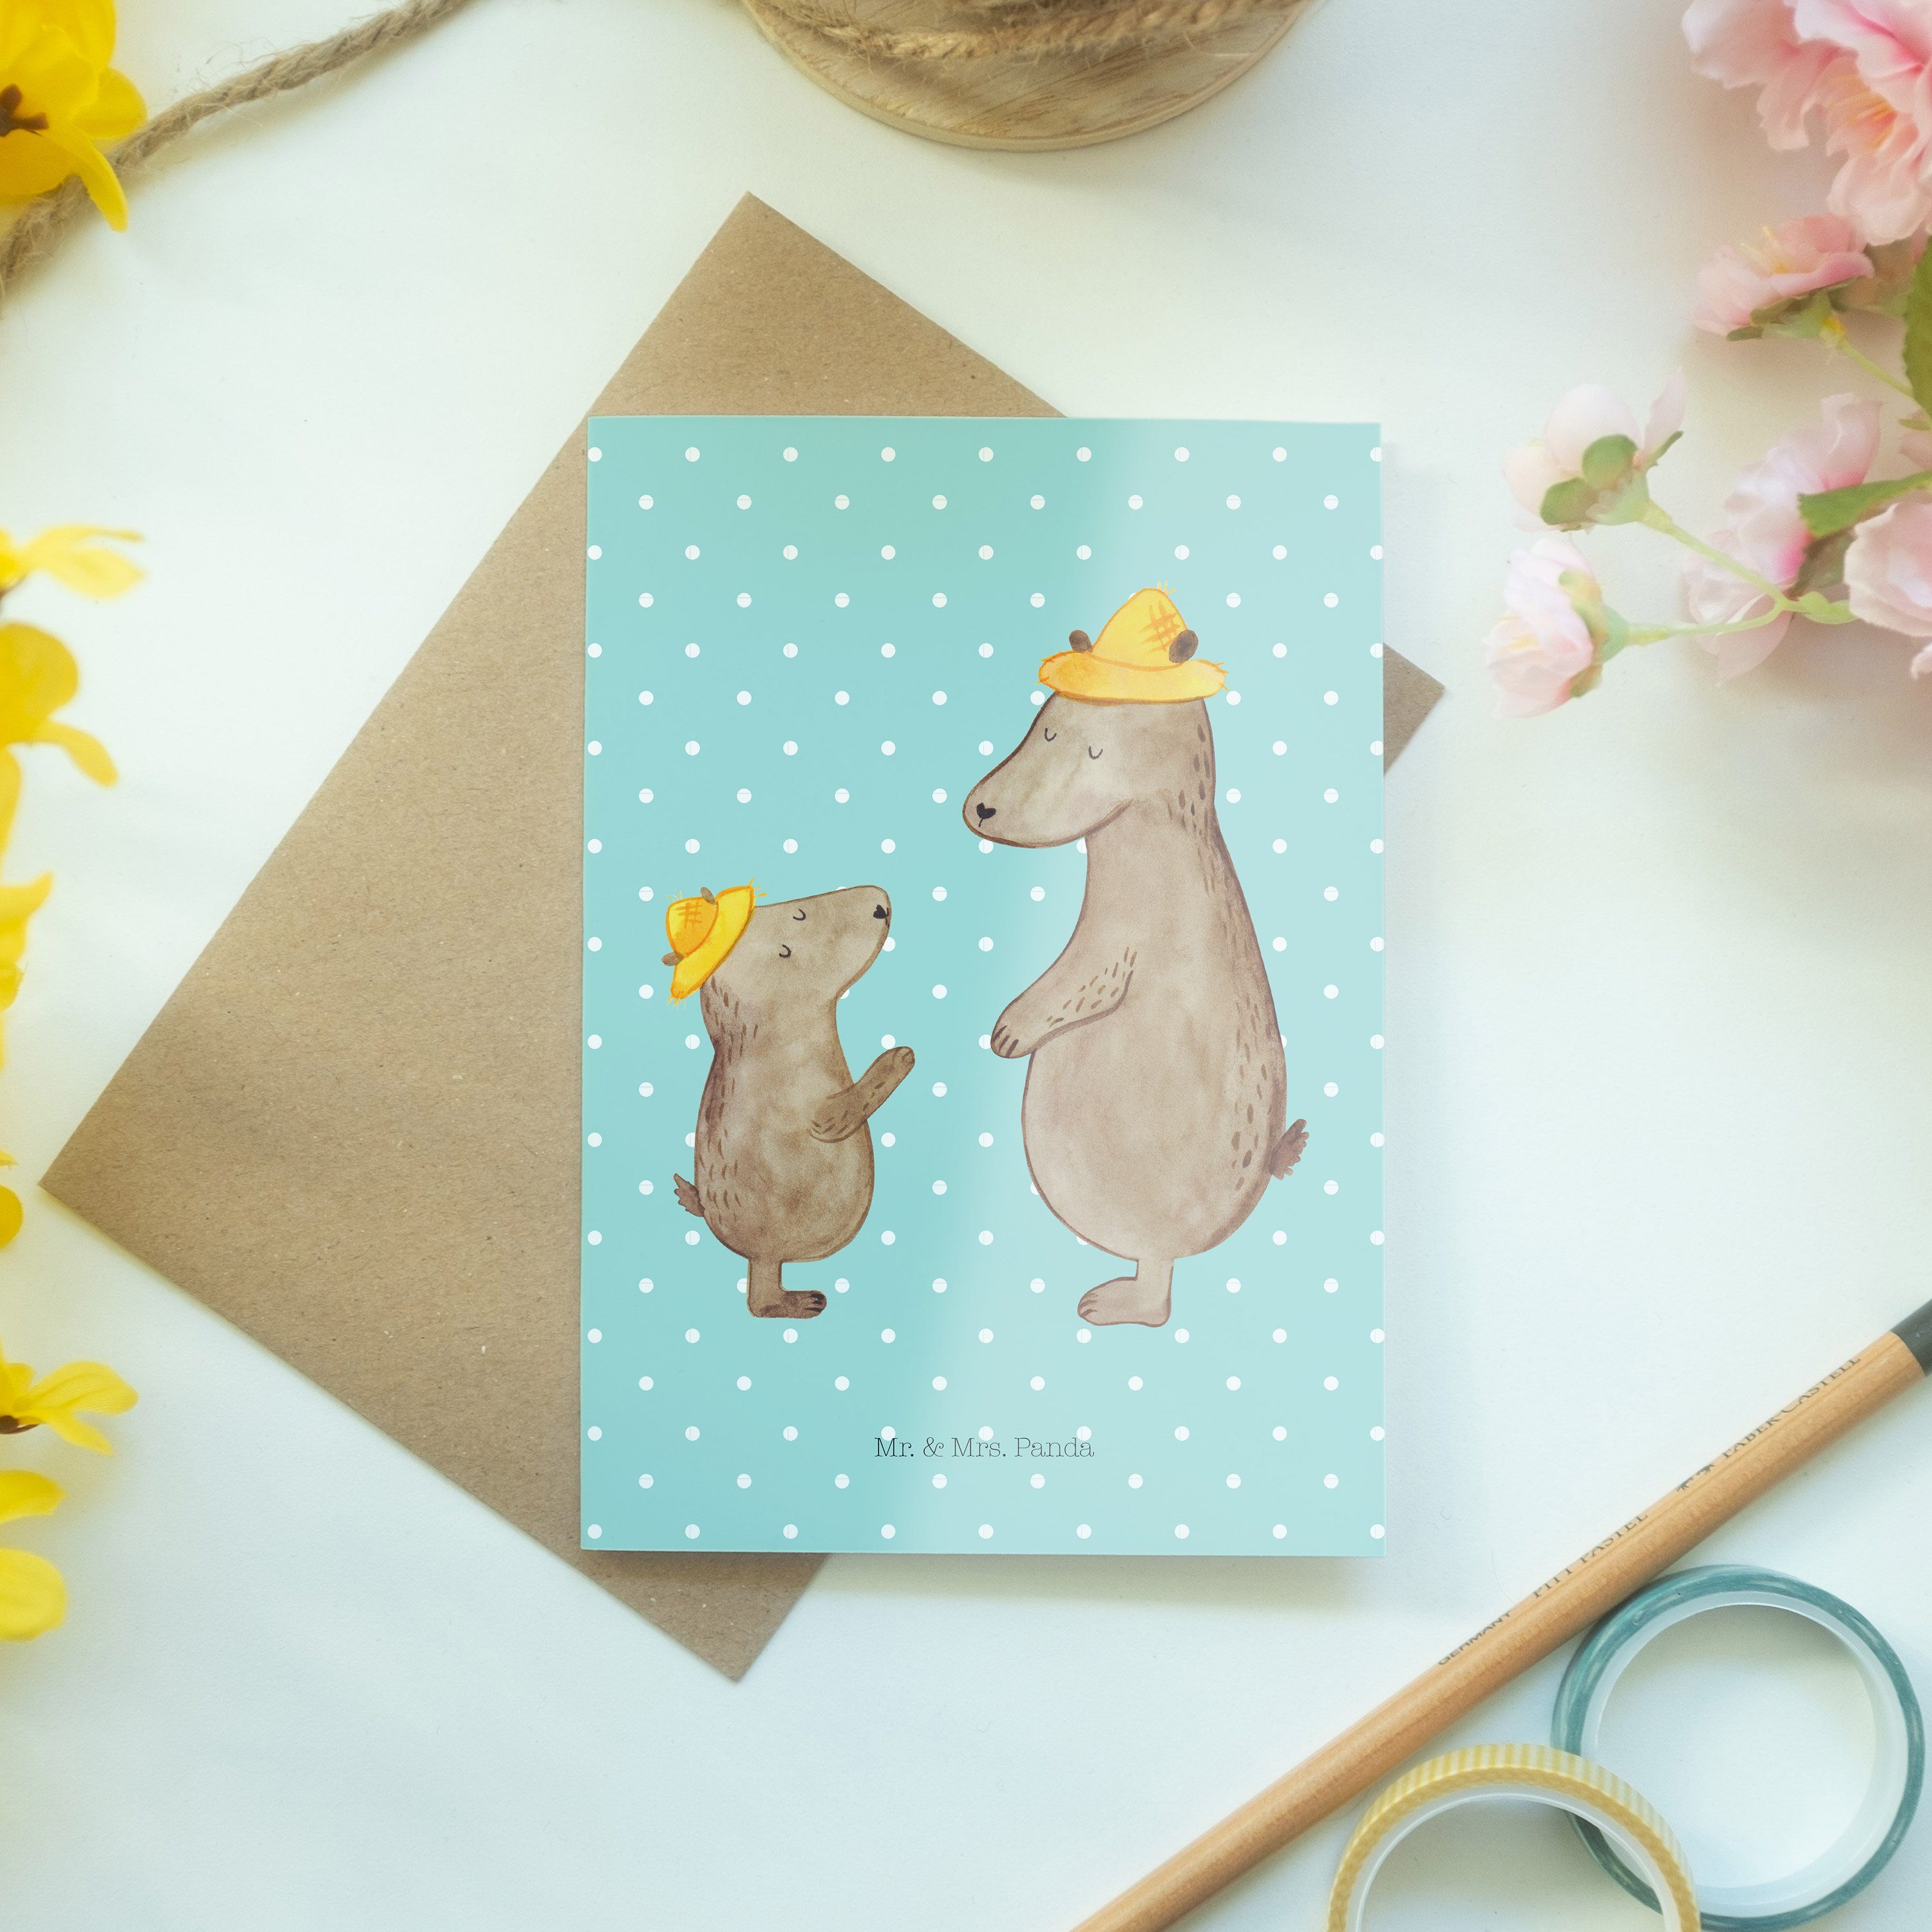 Mr. & Mrs. Panda Türkis Hut - Hochzeitskarte, Bären Pastell Papi, - Grußkarte Kart Geschenk, mit